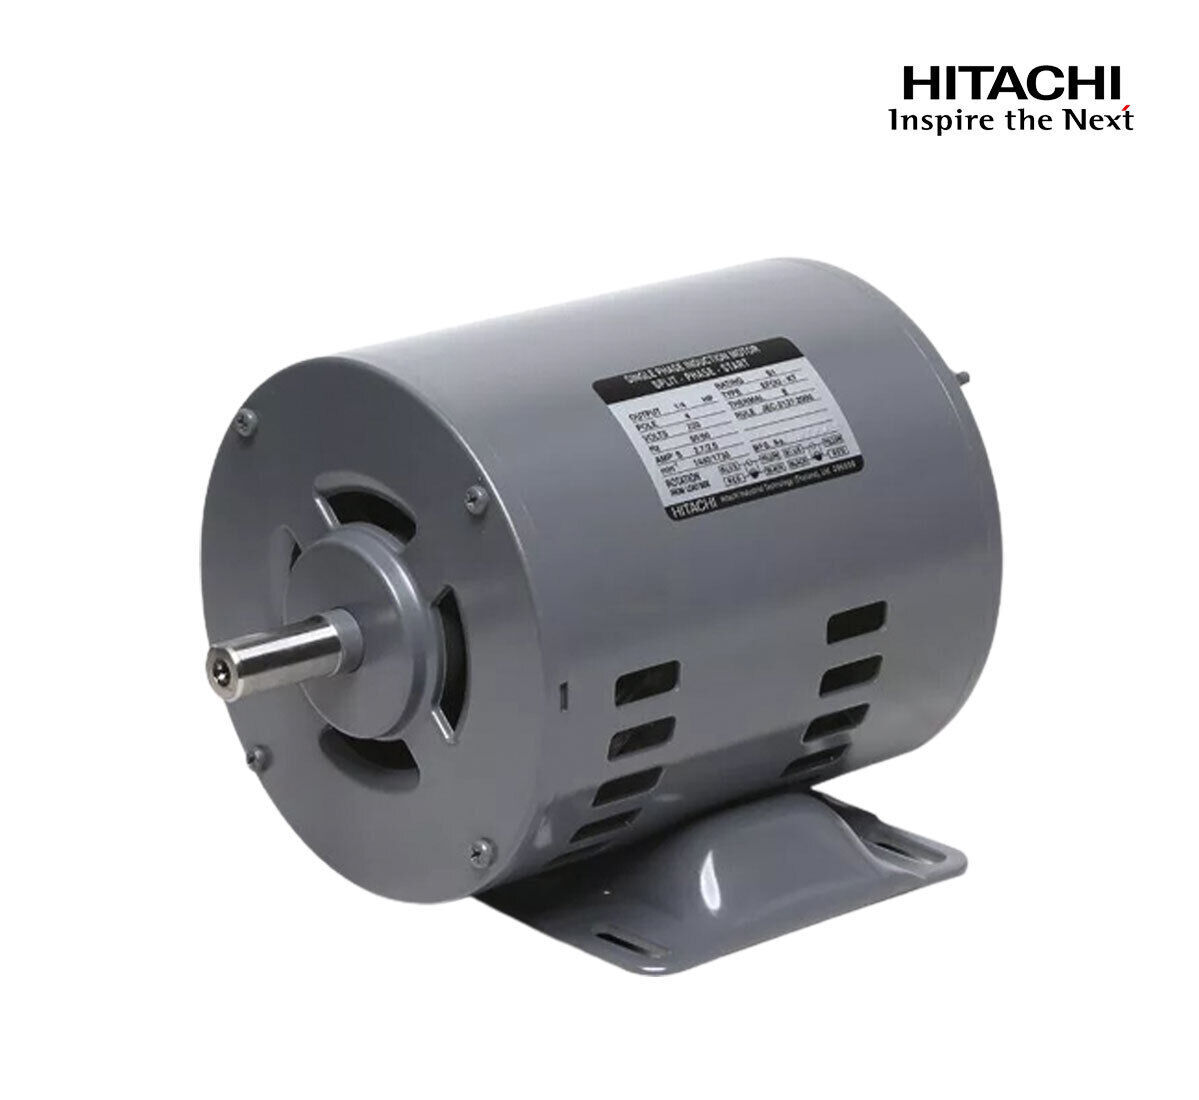 มอเตอร์ฮิตาชิของแท้ 100% HITACHI รุ่น EFOU-KT กำลัง 1/3 แรงม้า (0.25 KW.) กำลังไฟฟ้าที่ใช้ 220V ความเร็วรอบตัวเปล่า 1450 RPM แกนเพลามอเตอร์ 14 MM.รับประกัน 3 ปี มีของพร้อมจัดส่งทุกวัน